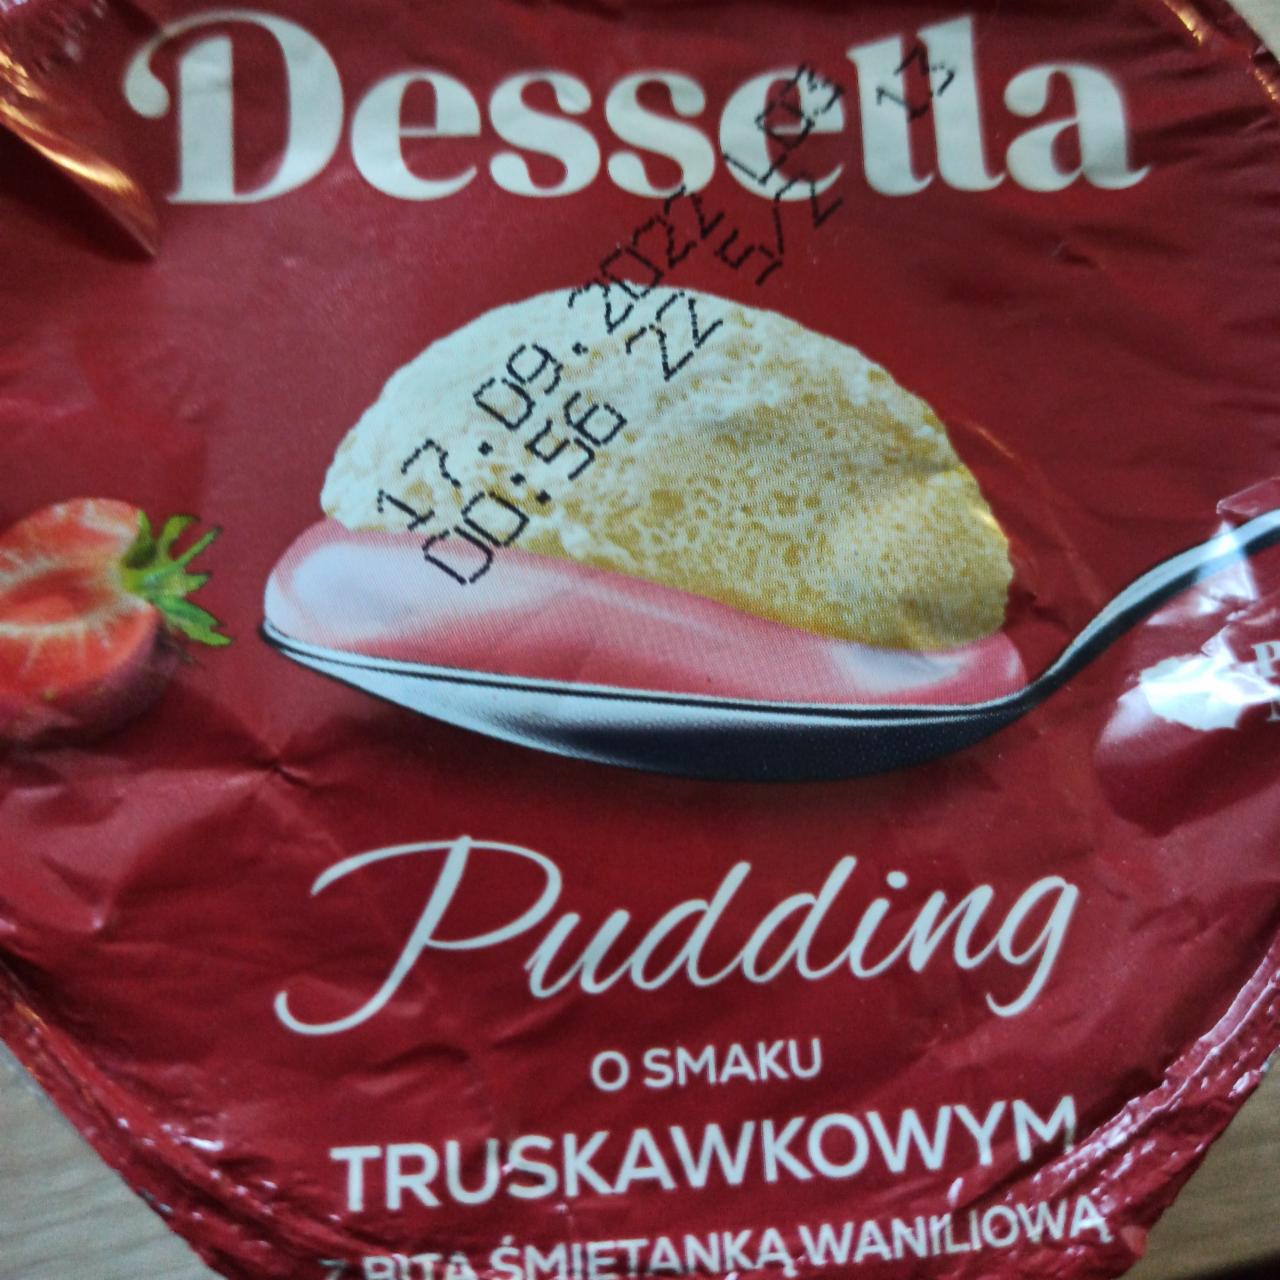 Fotografie - Pudding o smaku truskawkowym z bitą śmietanką waniliową Dessella